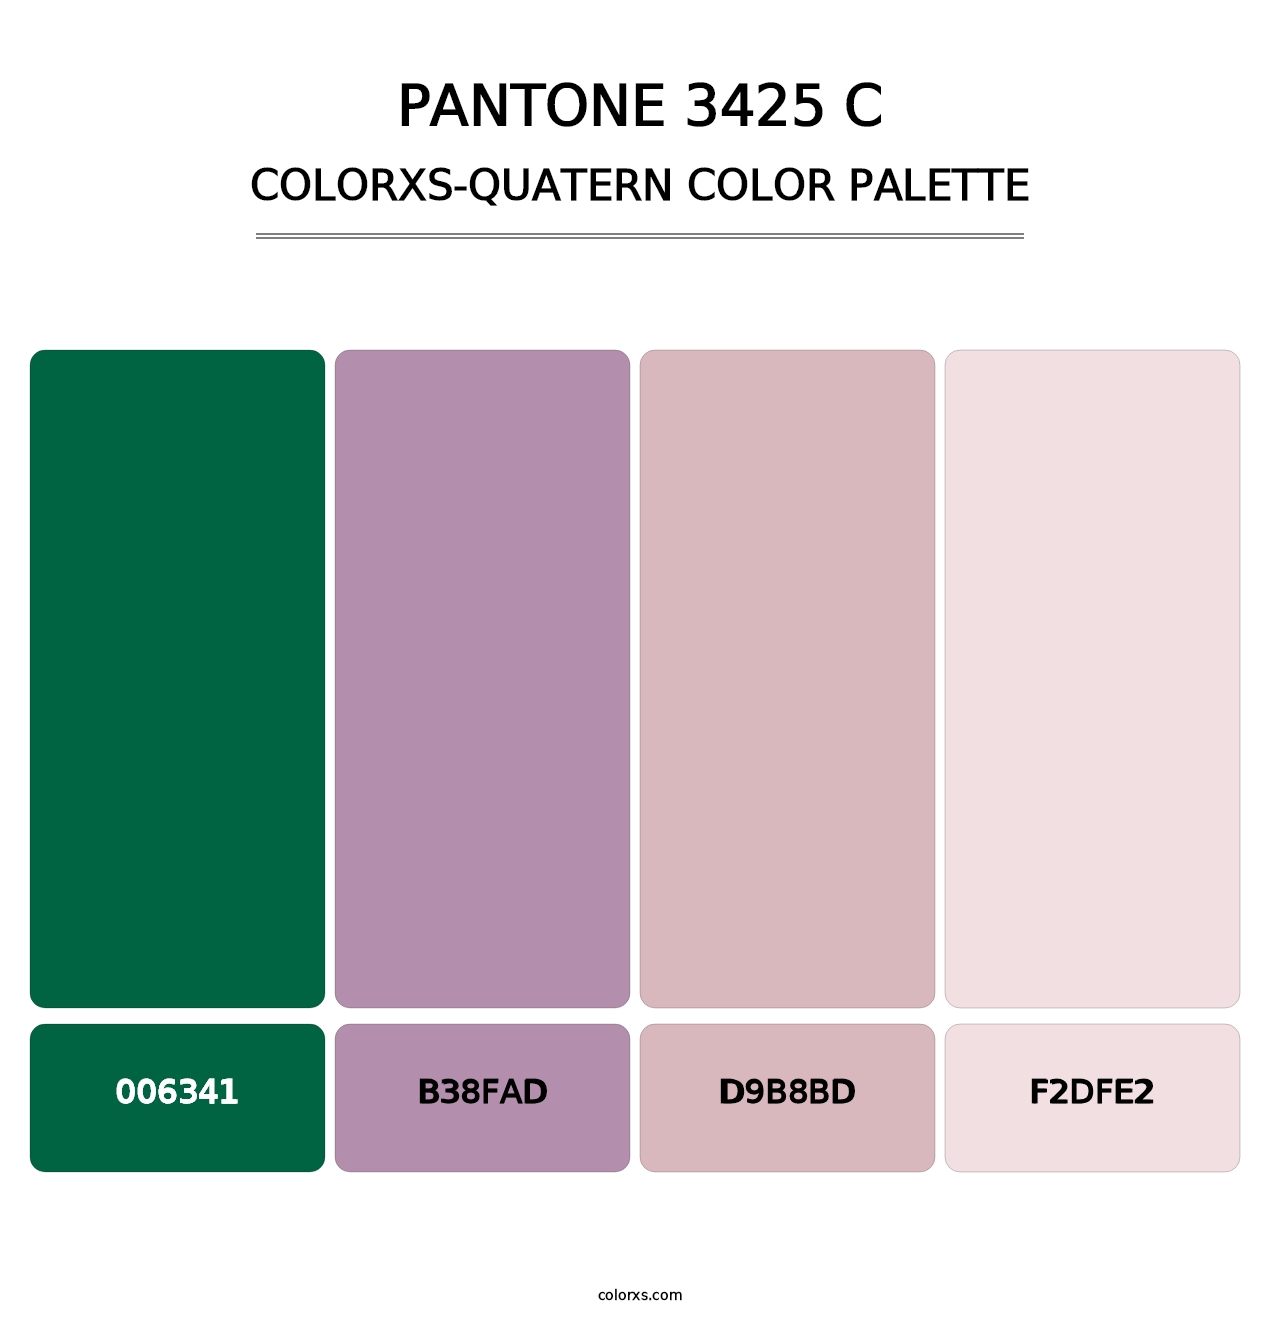 PANTONE 3425 C - Colorxs Quatern Palette